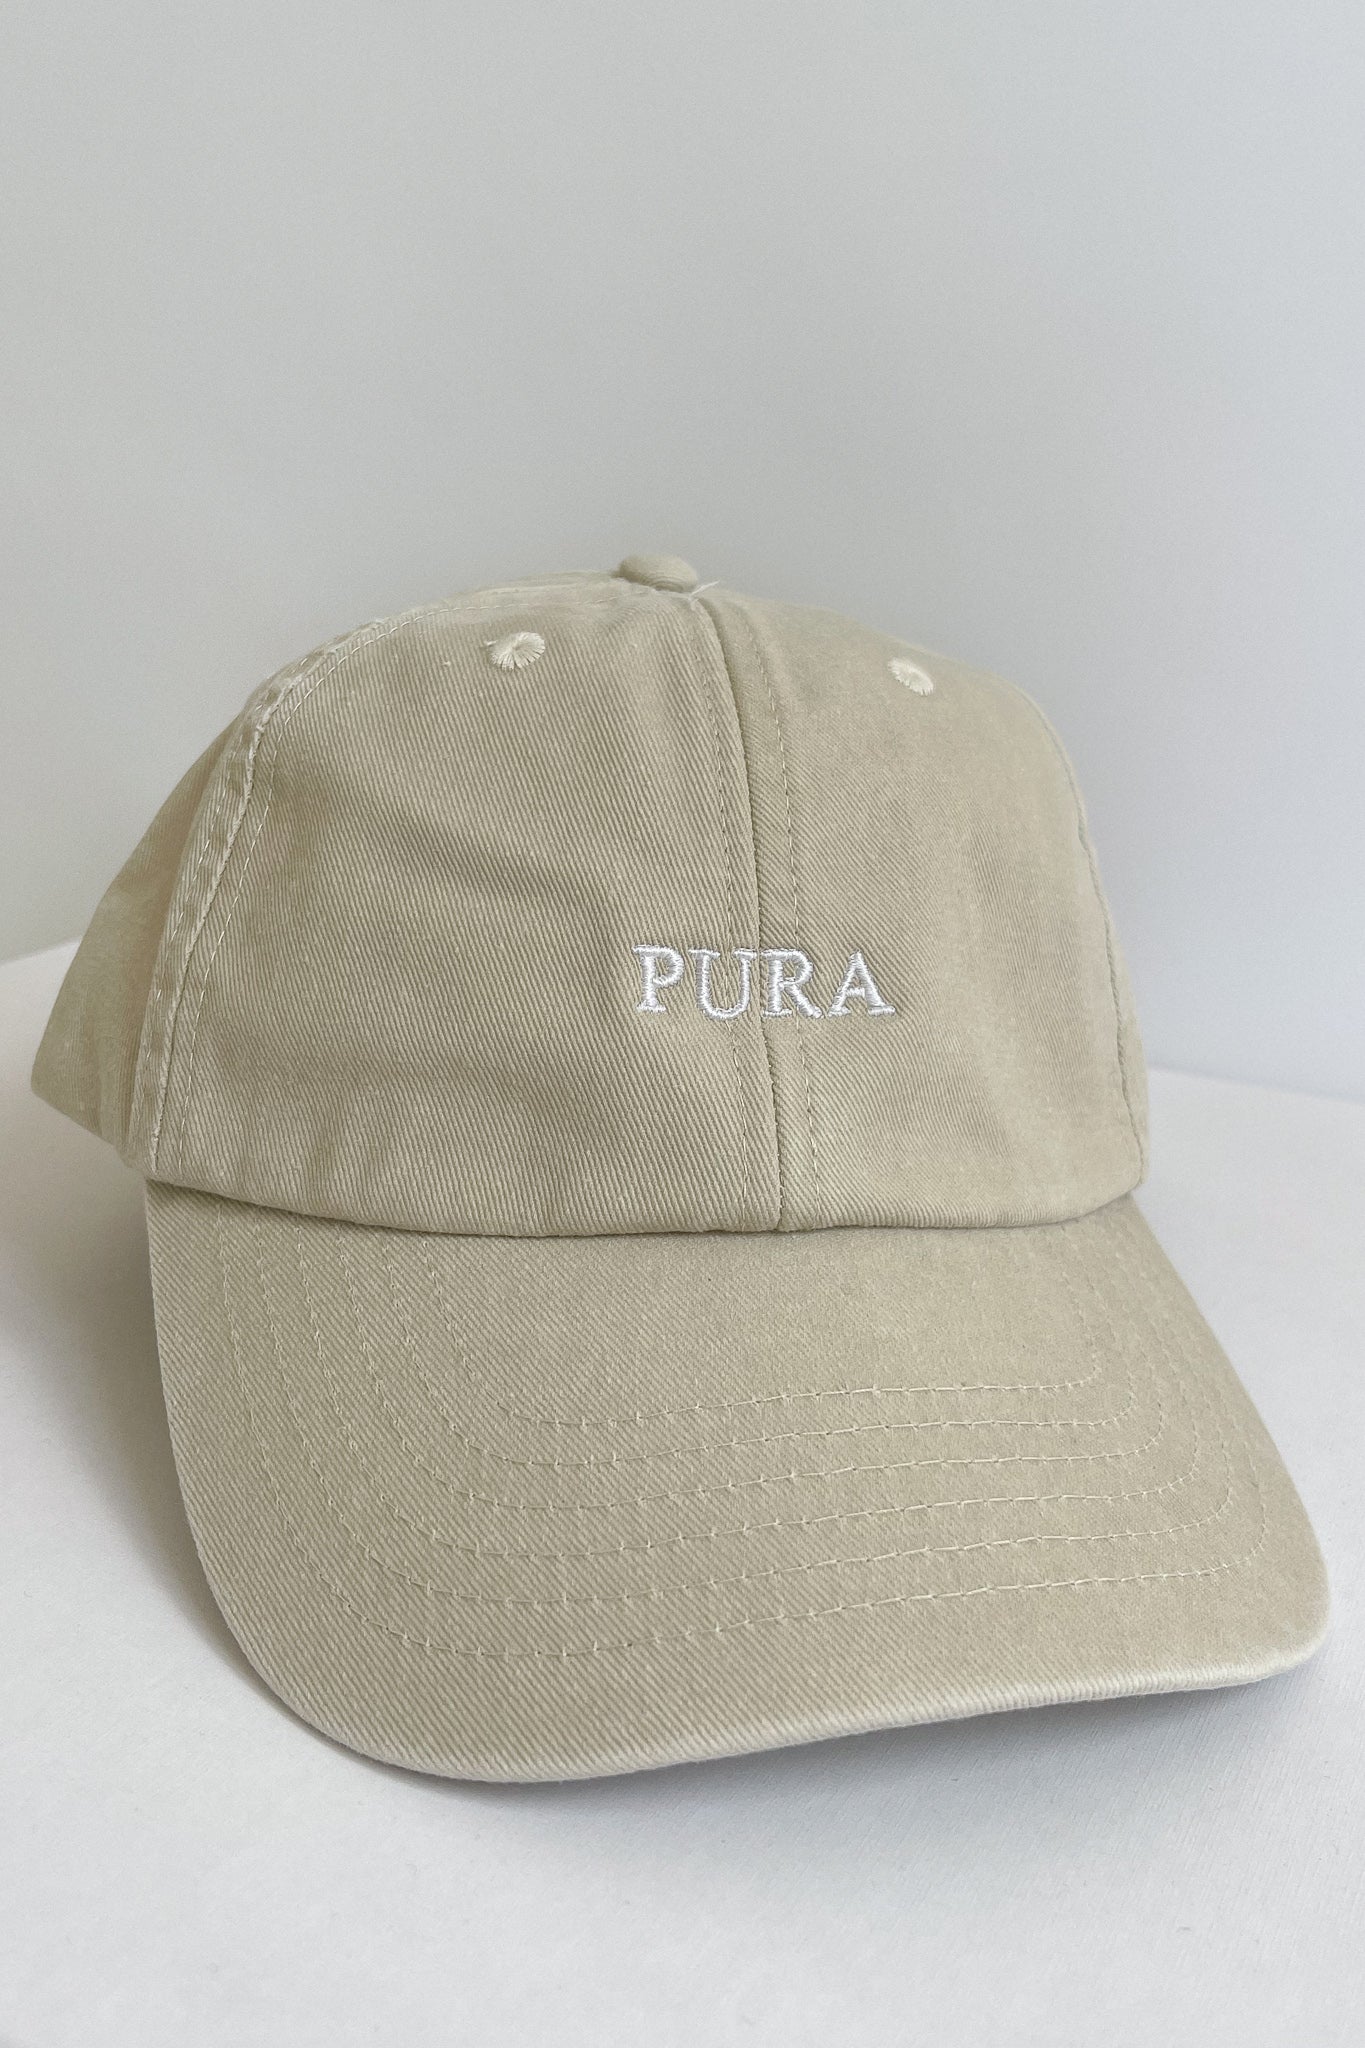 THE PURA CAP BEIGE